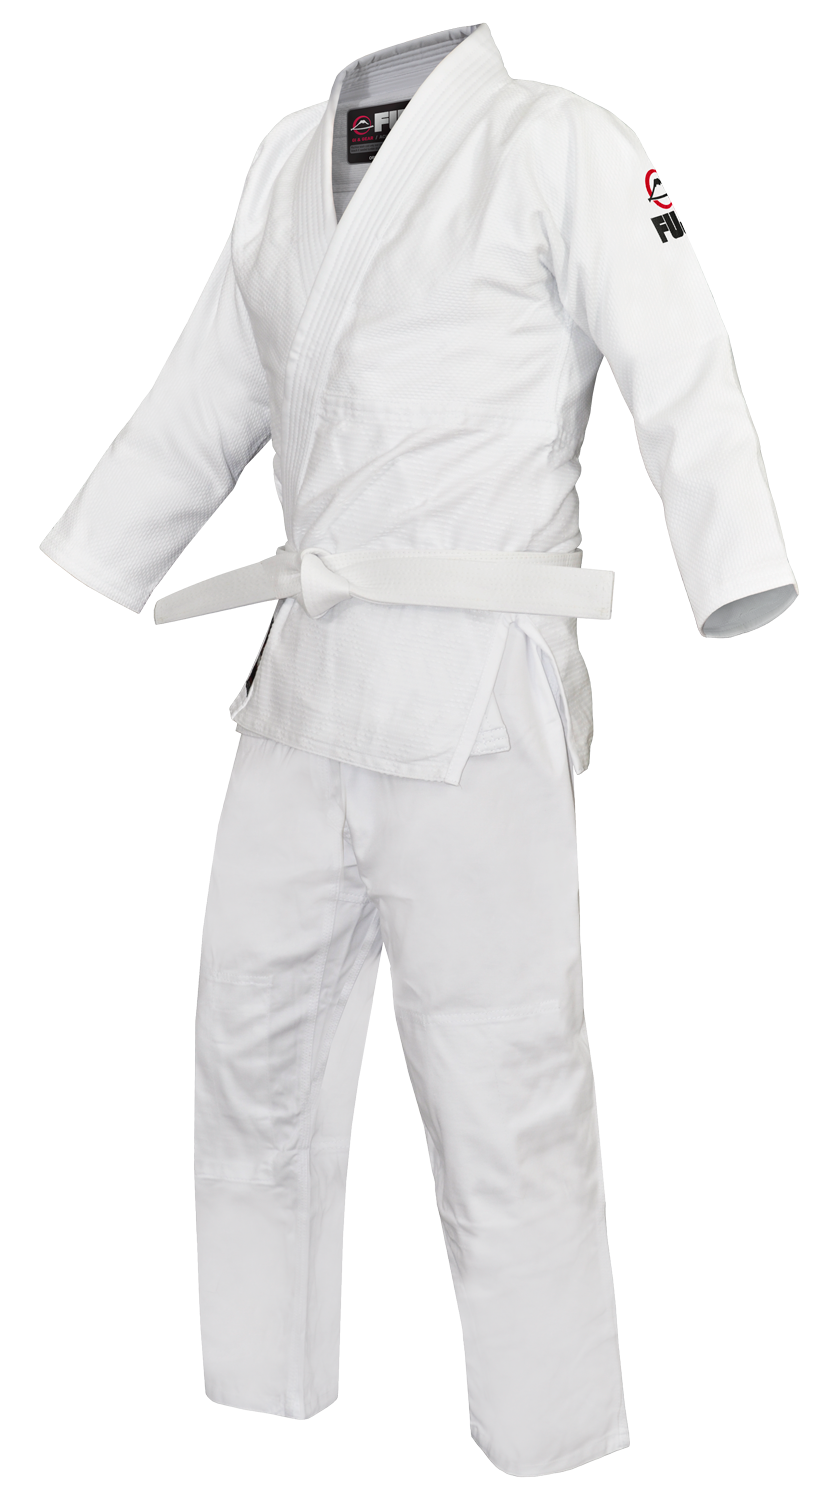 Judogi Uniform PNG Images HD